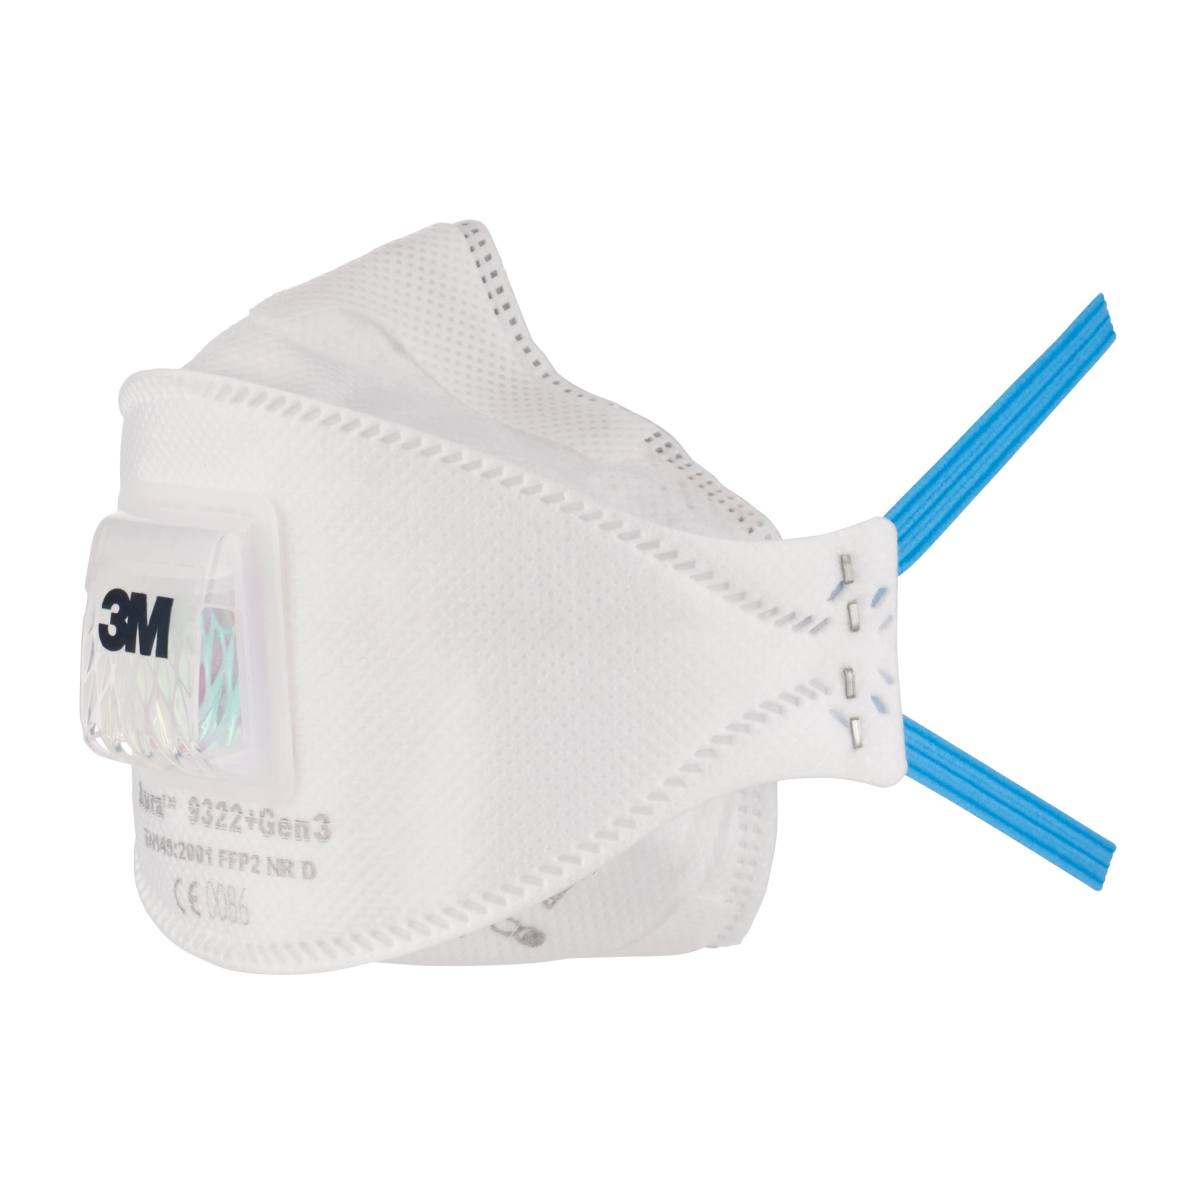 3M 9322+ Gen3 Aura Masque de protection respiratoire FFP2 avec valve d'expiration Cool-Flow, jusqu'à 10 fois la valeur limite (emballage individuel hygiénique)